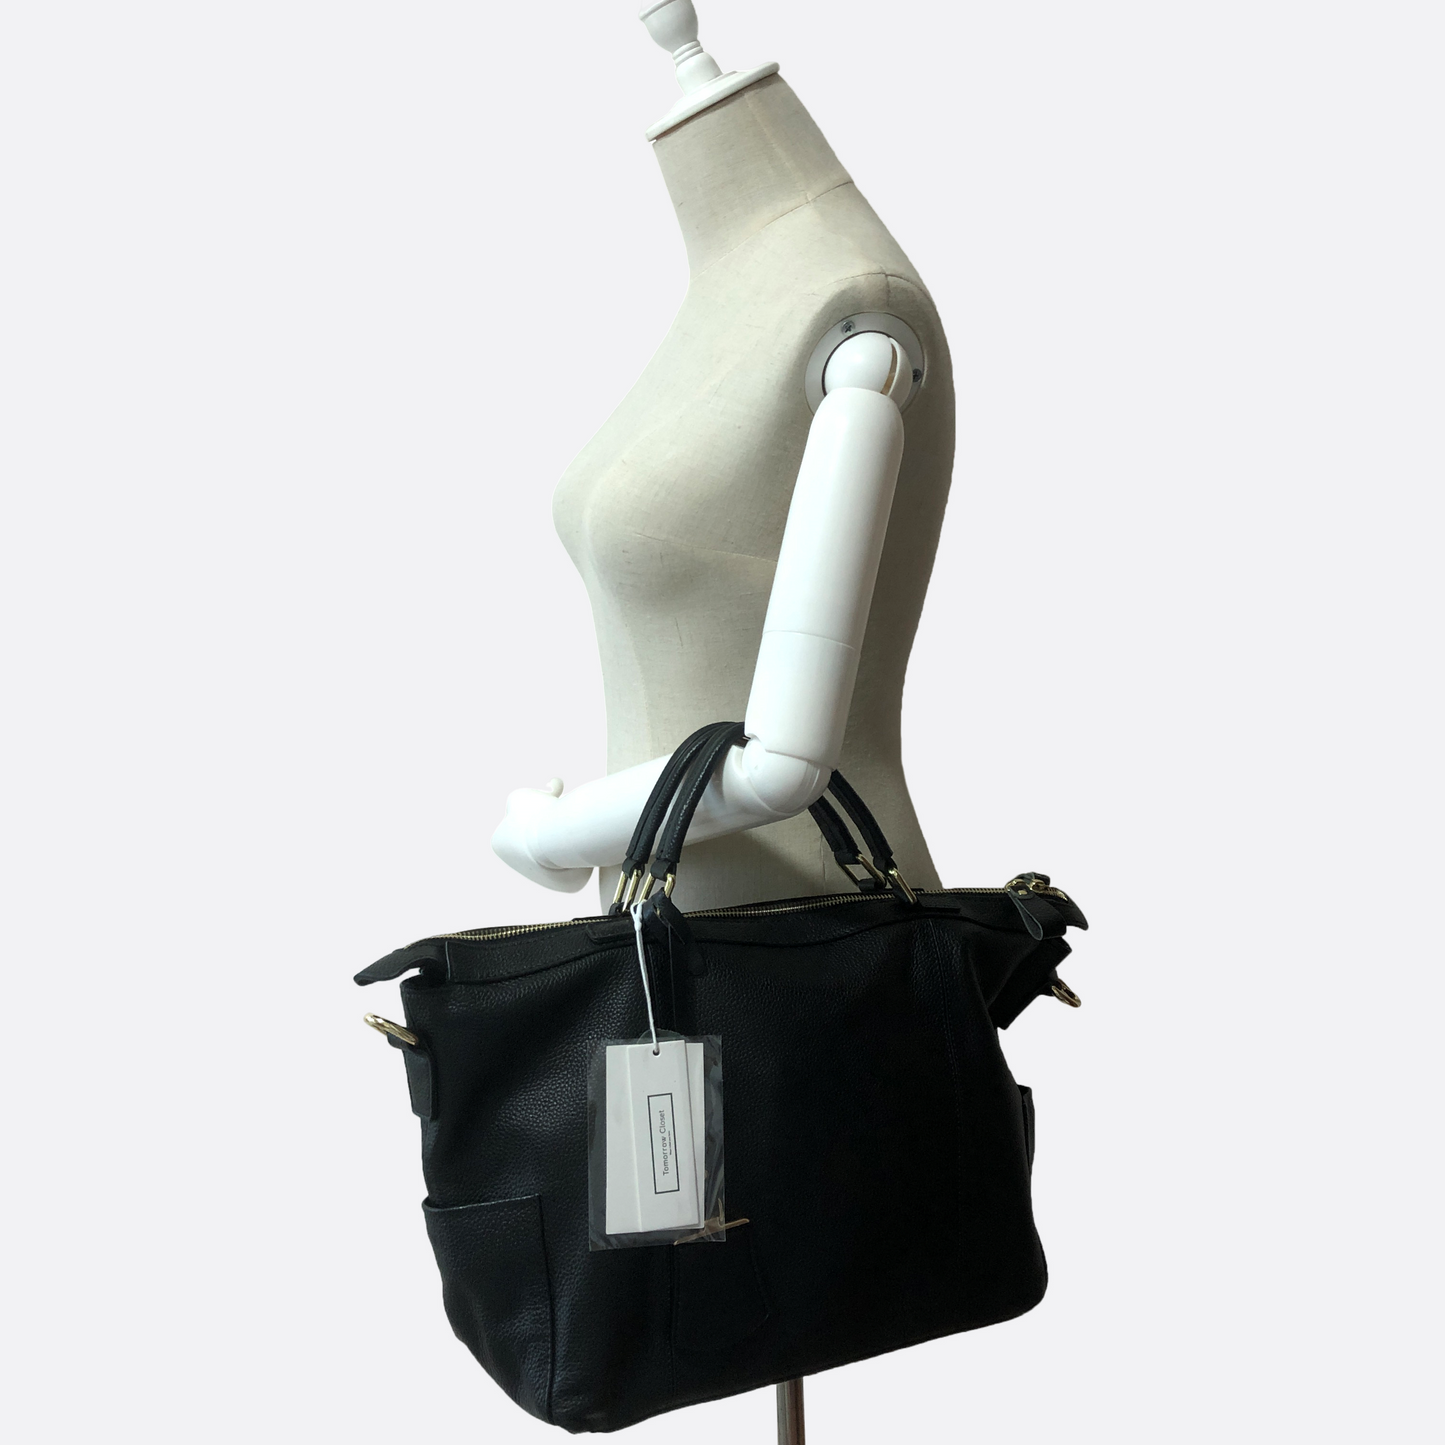 Women's genuine cowhide leather handbag Ellipse V3 design